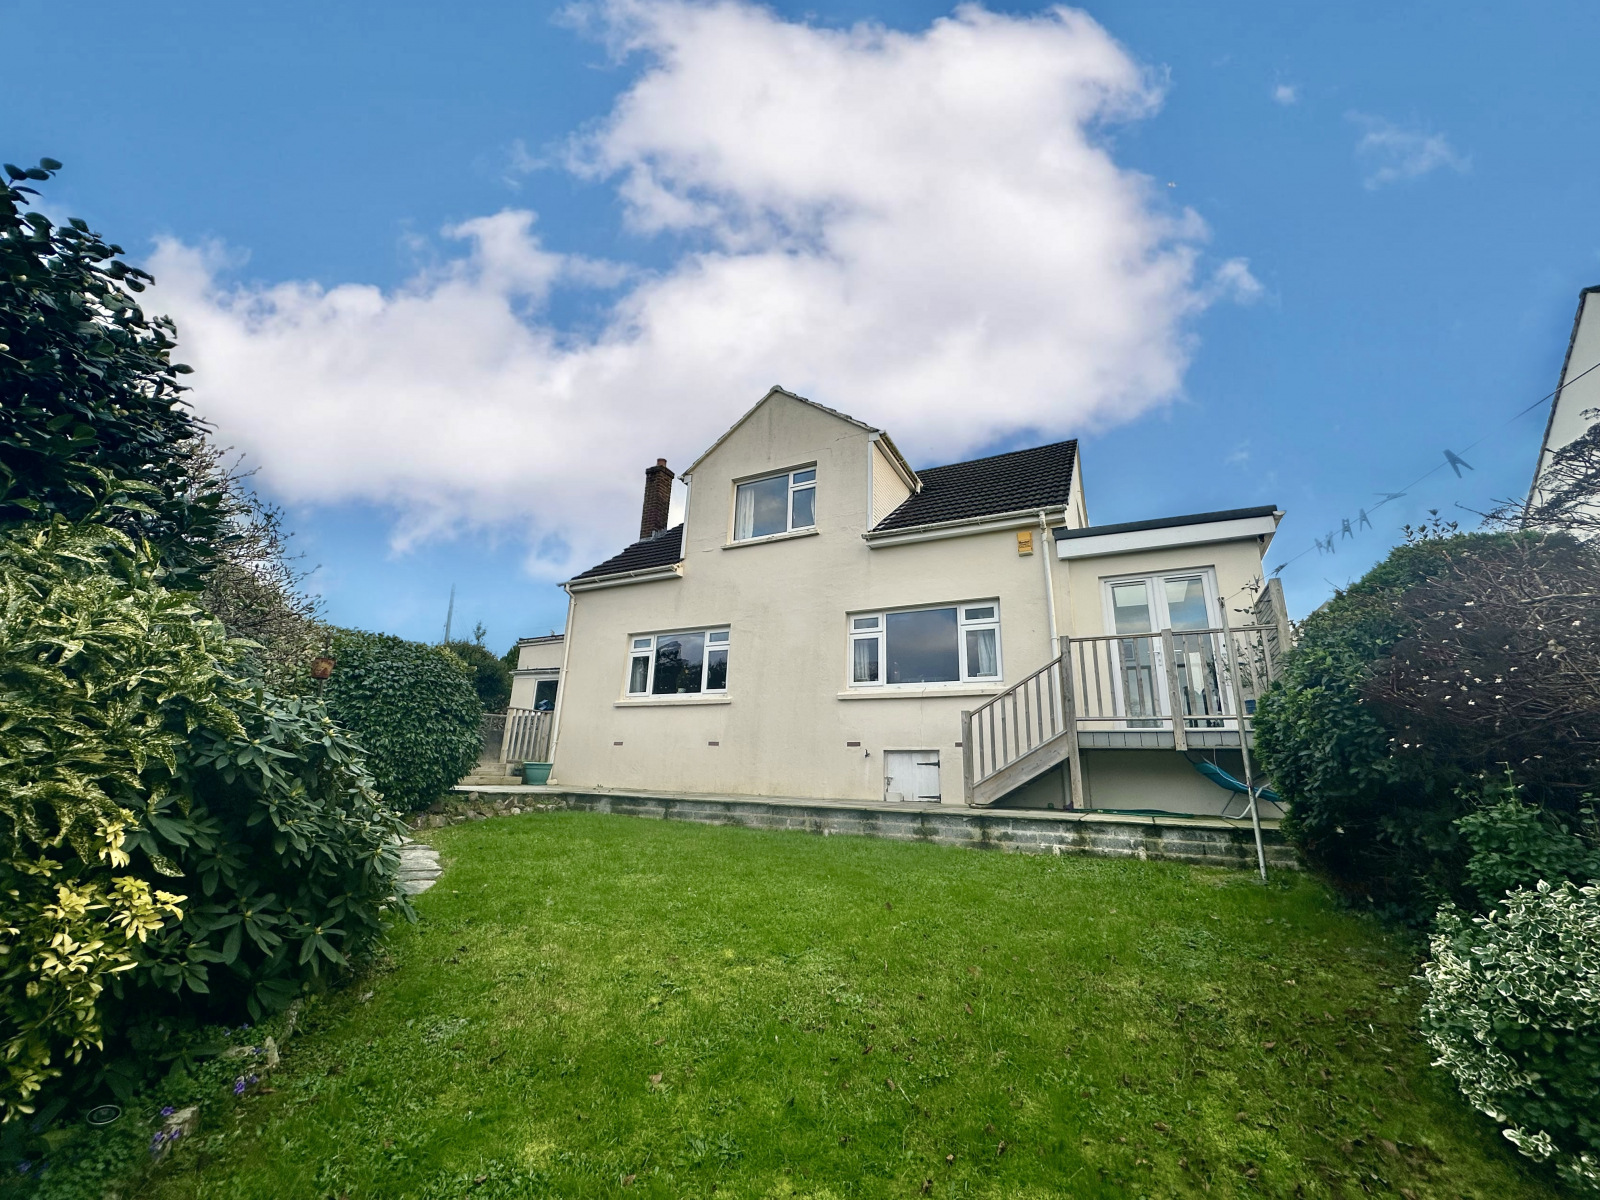 4 bed detached house for sale in Moreton Park Road, Devon - Property Image 1